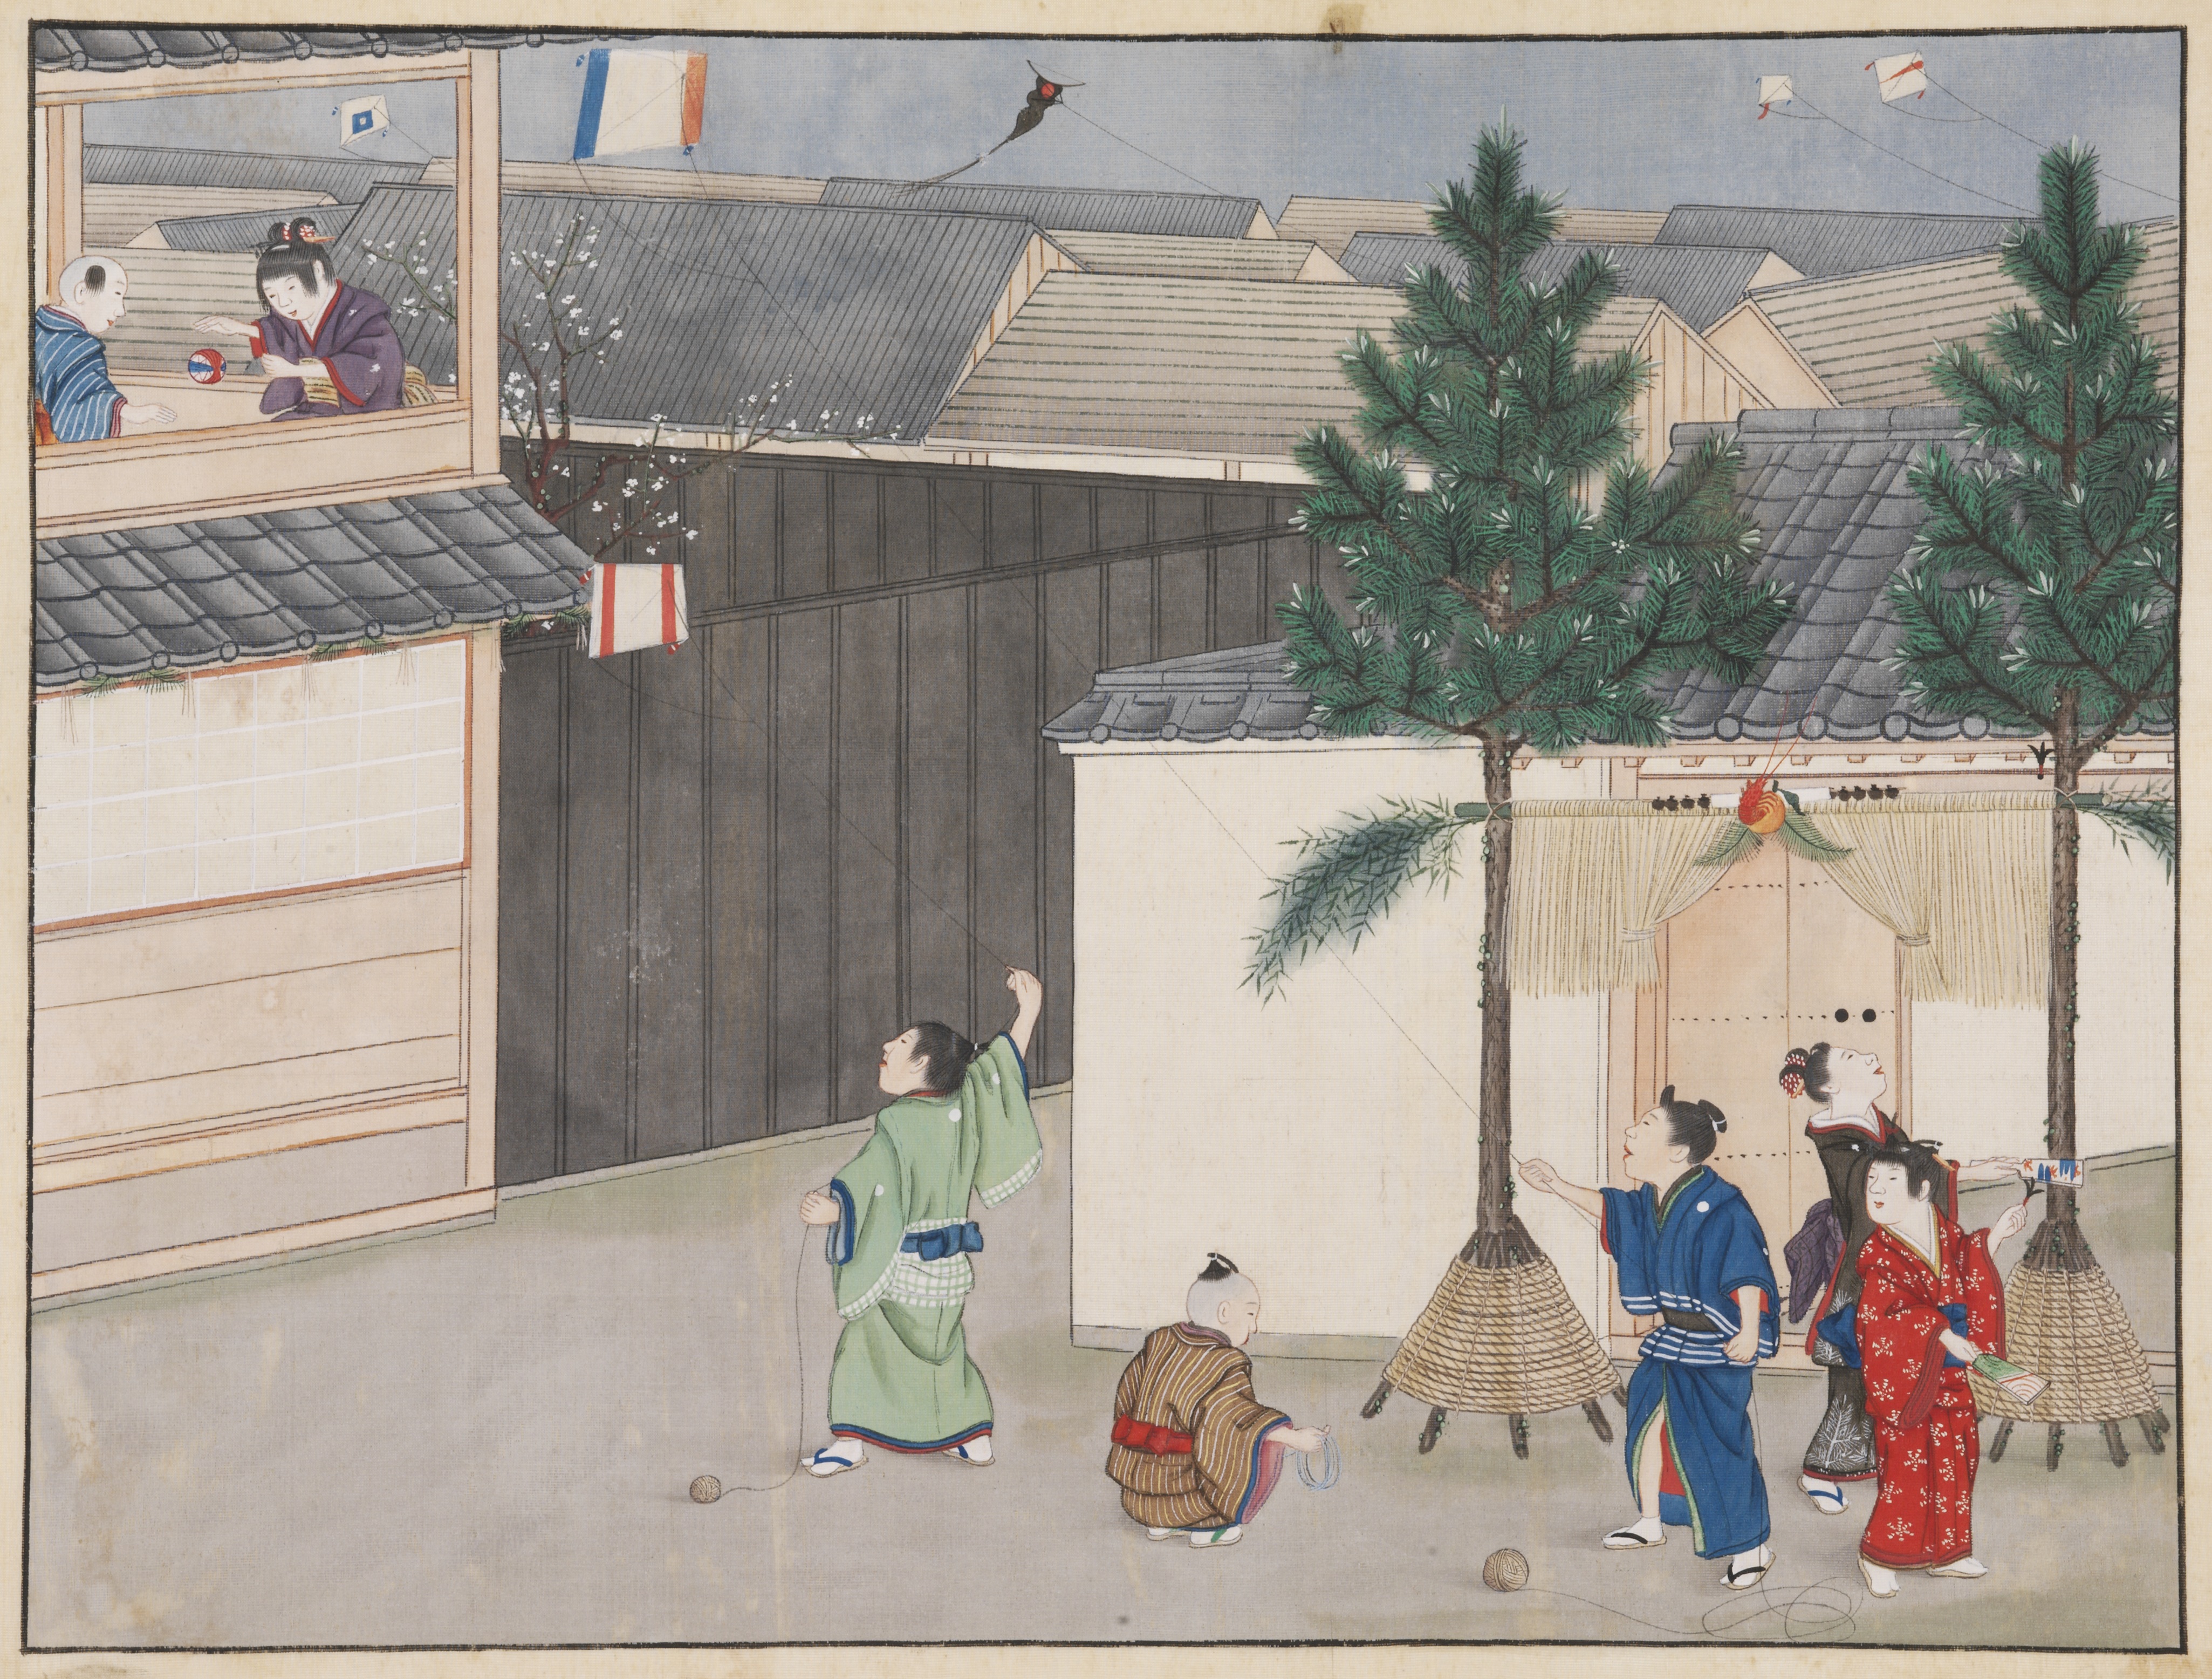 Kawahara Keiga, Nagasaki, Japan, 1825-1829, RV-1-4480-11 